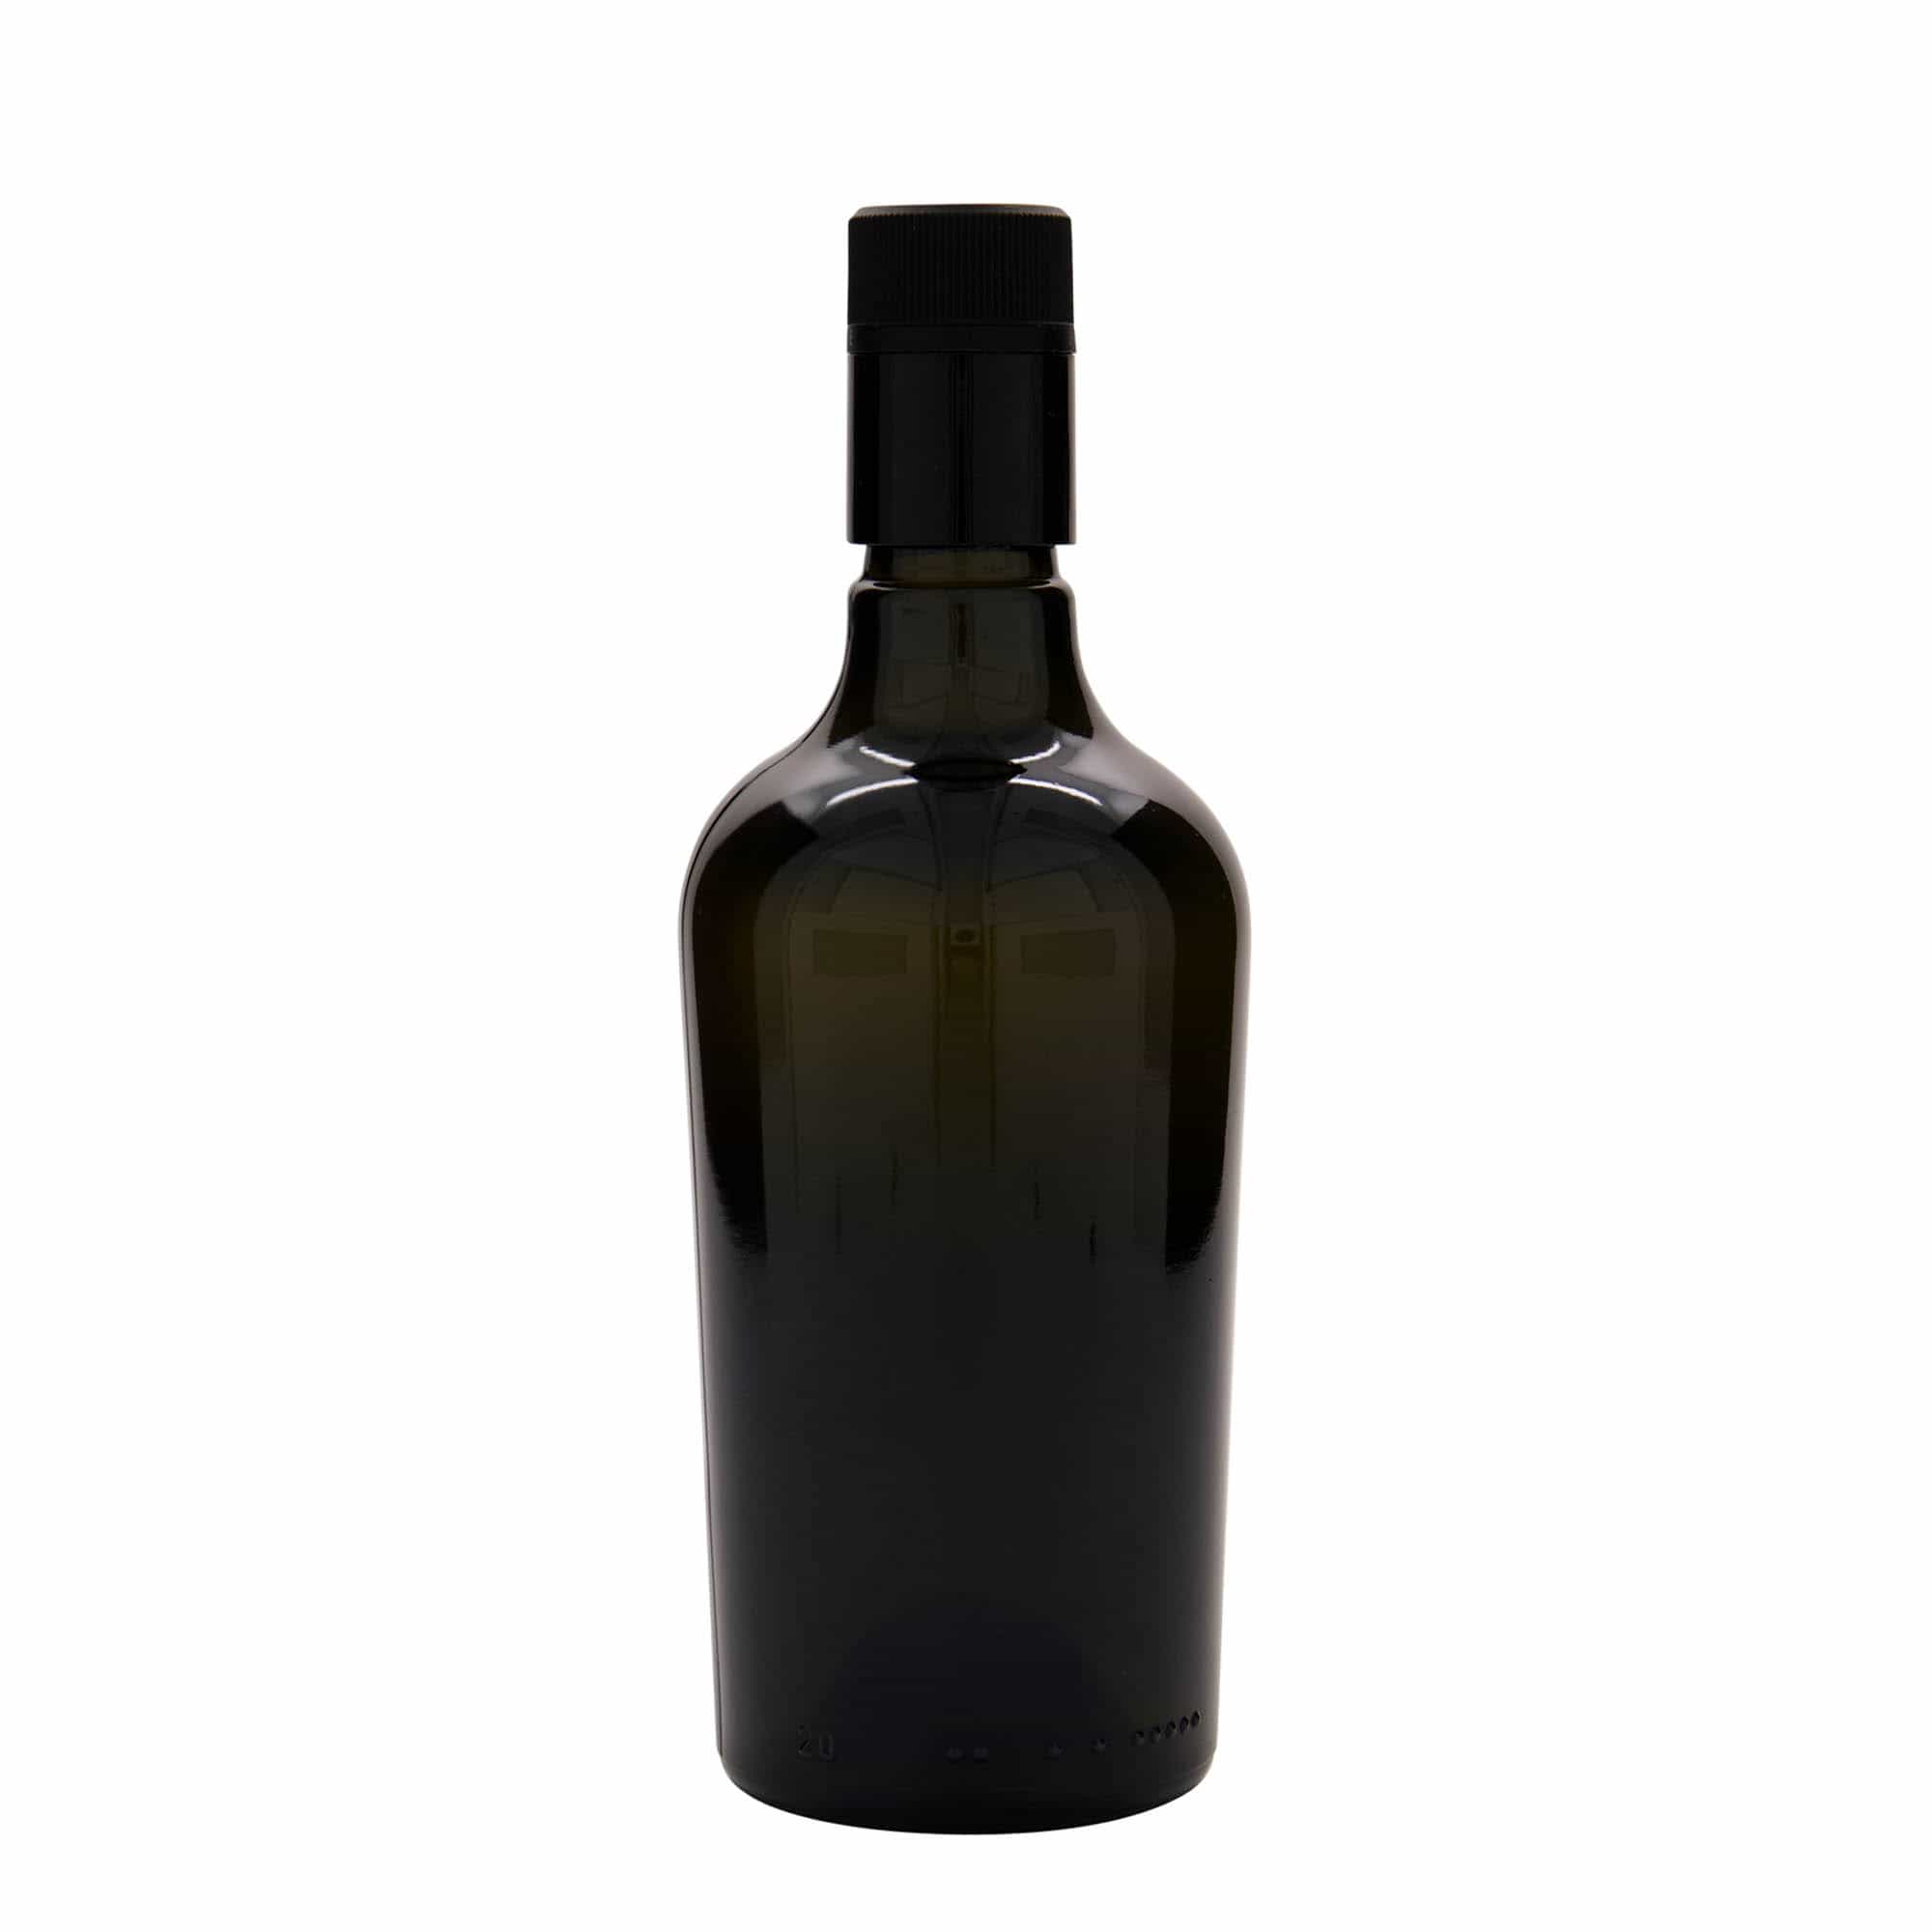 500 ml Bottiglia olio/aceto 'Oleum', vetro, verde antico, imboccatura: DOP